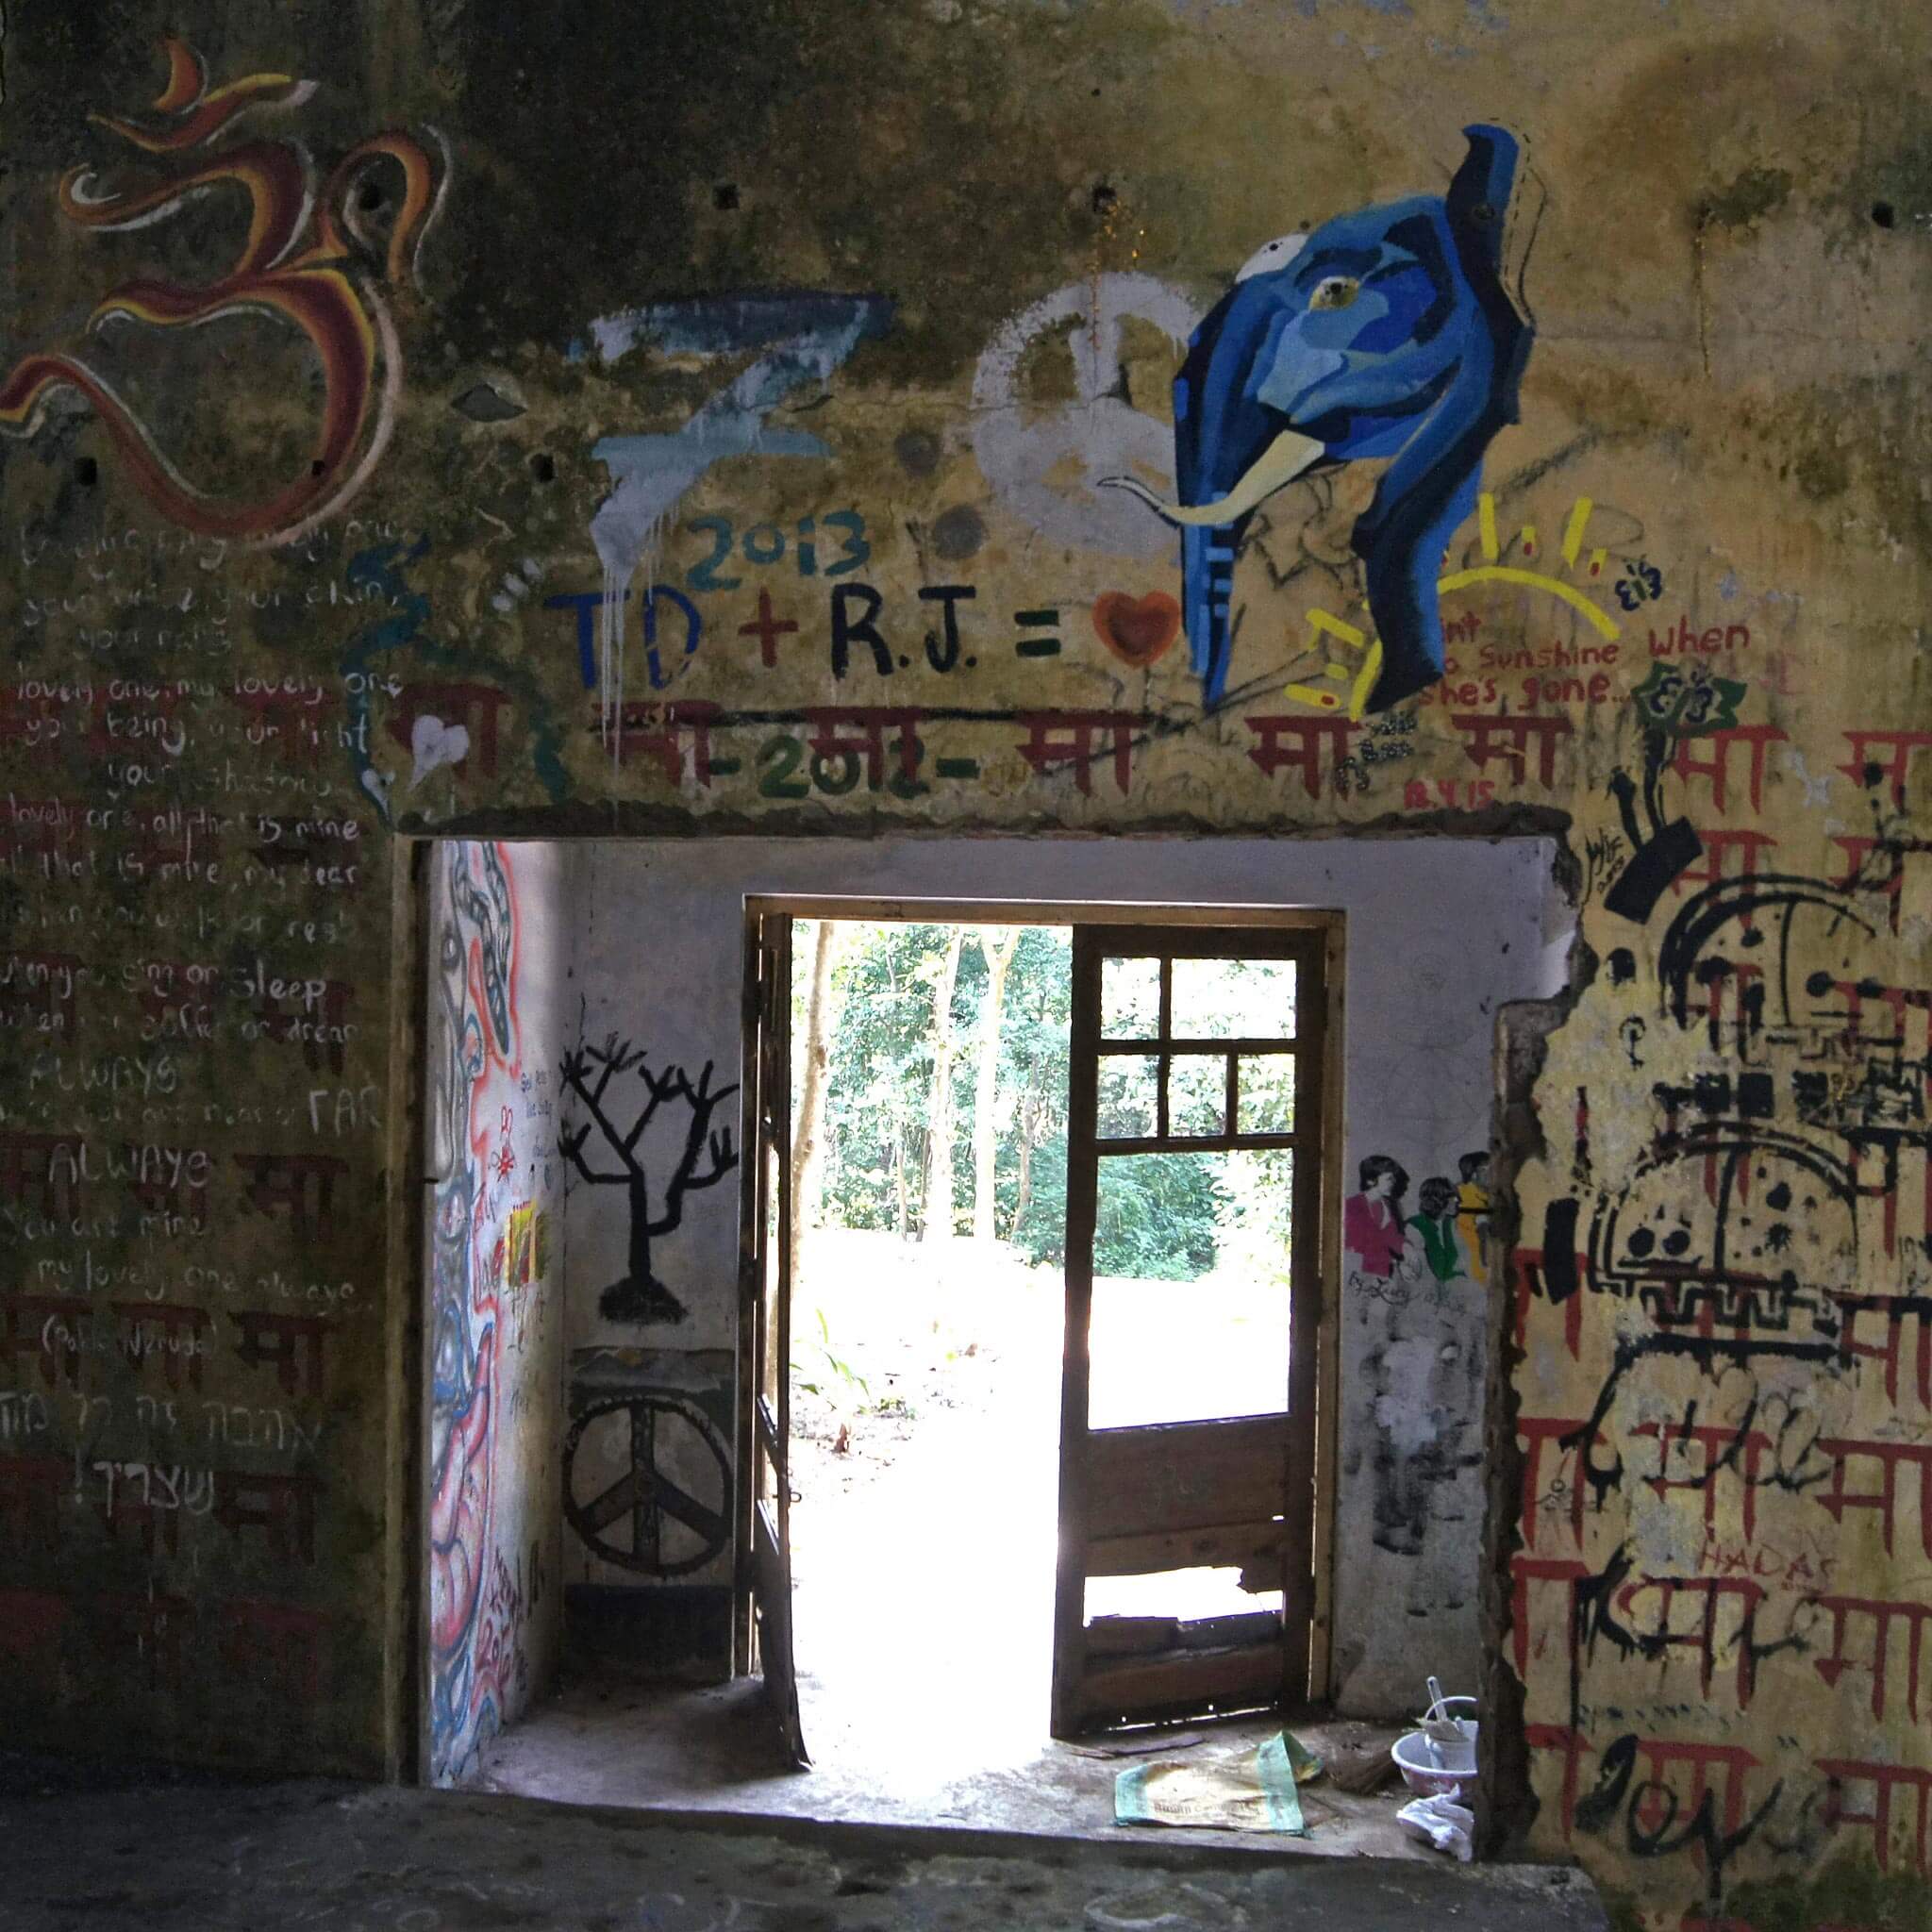 Graffiteja raunion seinissä